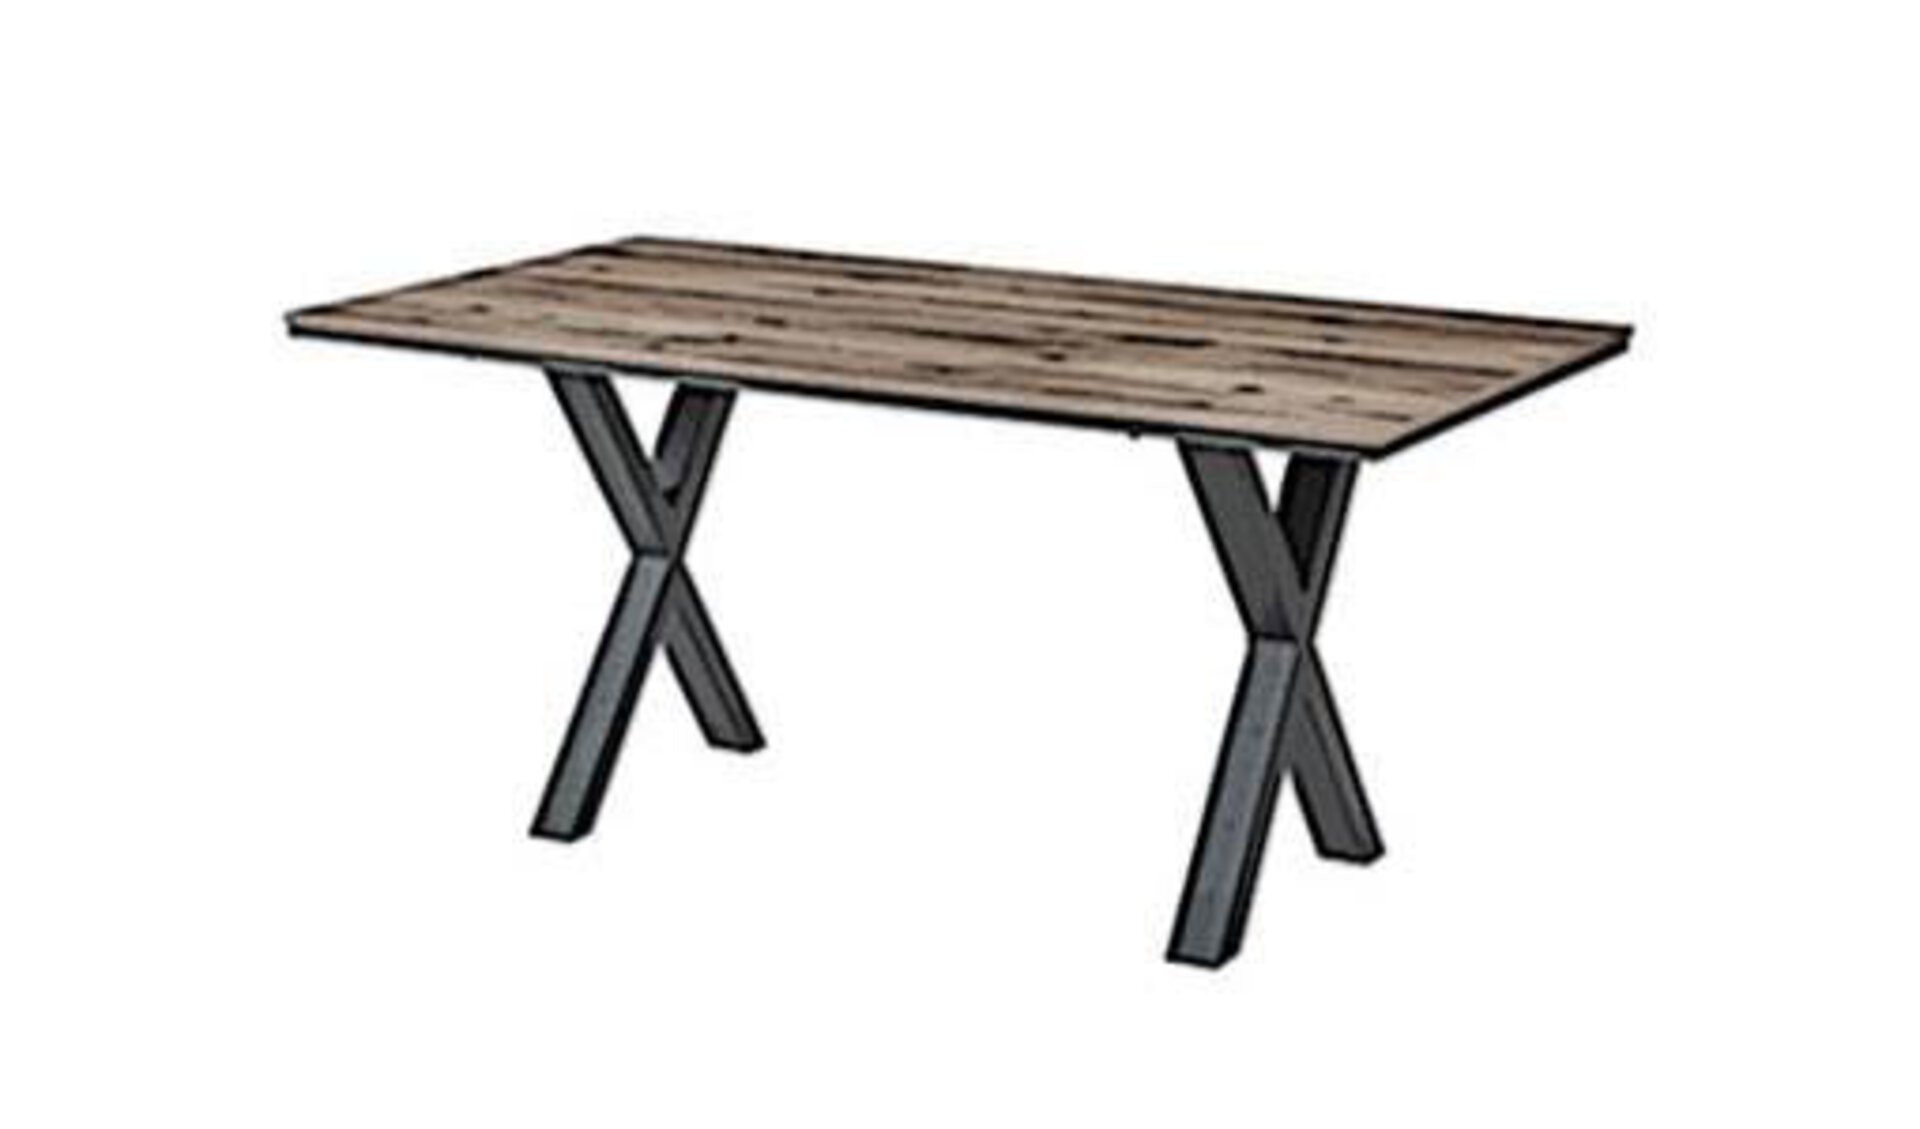 Esstisch mit Tischplatte aus edlem Holz und gekreuzten Metalltischbeinen, die links und rechts jeweils ein "X" bilden. Der stilisierte Esstisch steht für alle Tische innerhalb der Kategorie "Esszimmer".